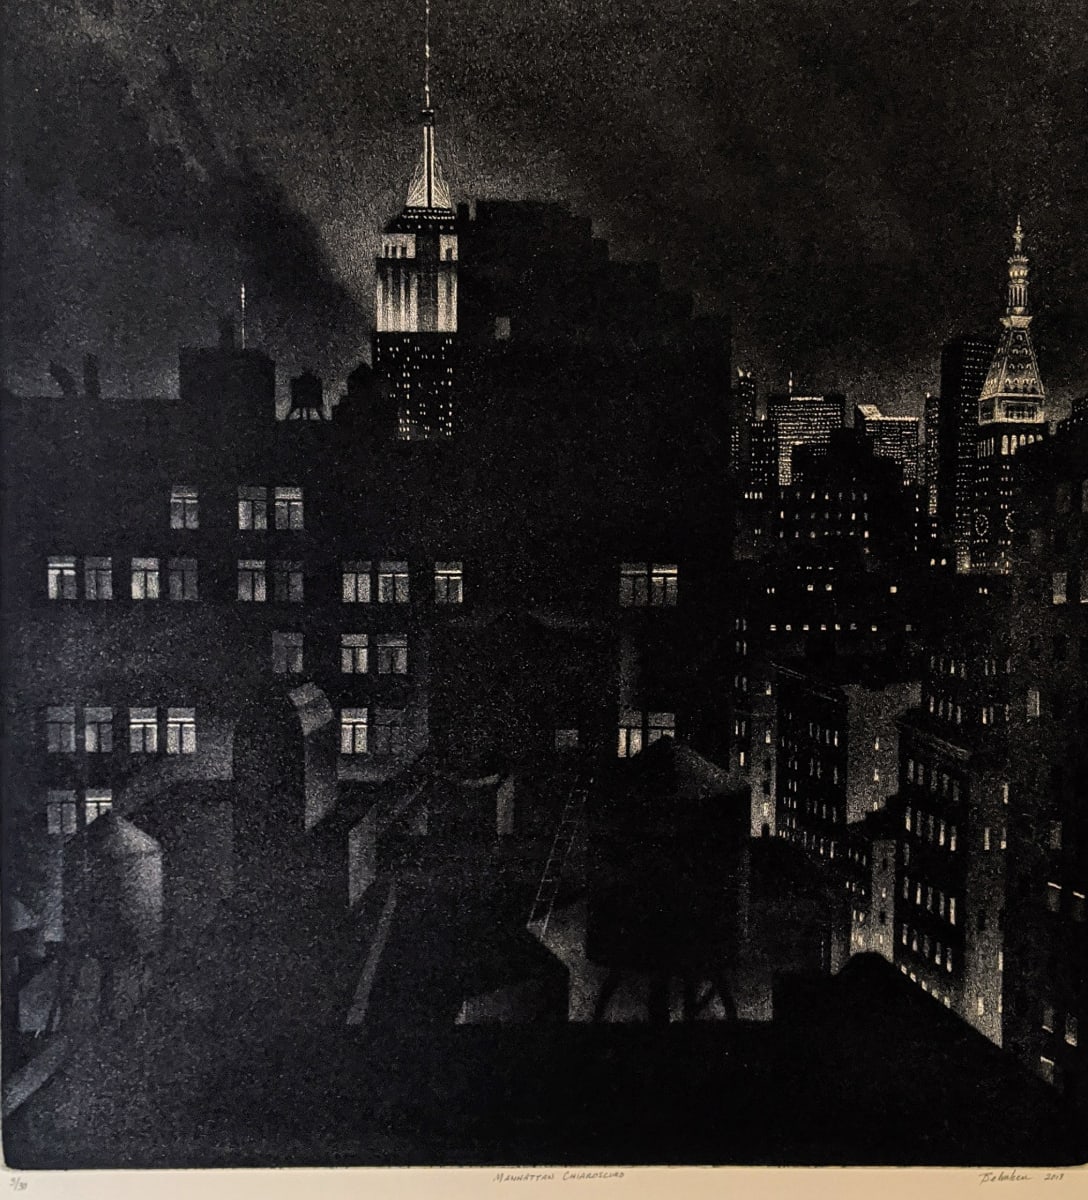 Manhattan Chiaroscuro by William J. Behnken 